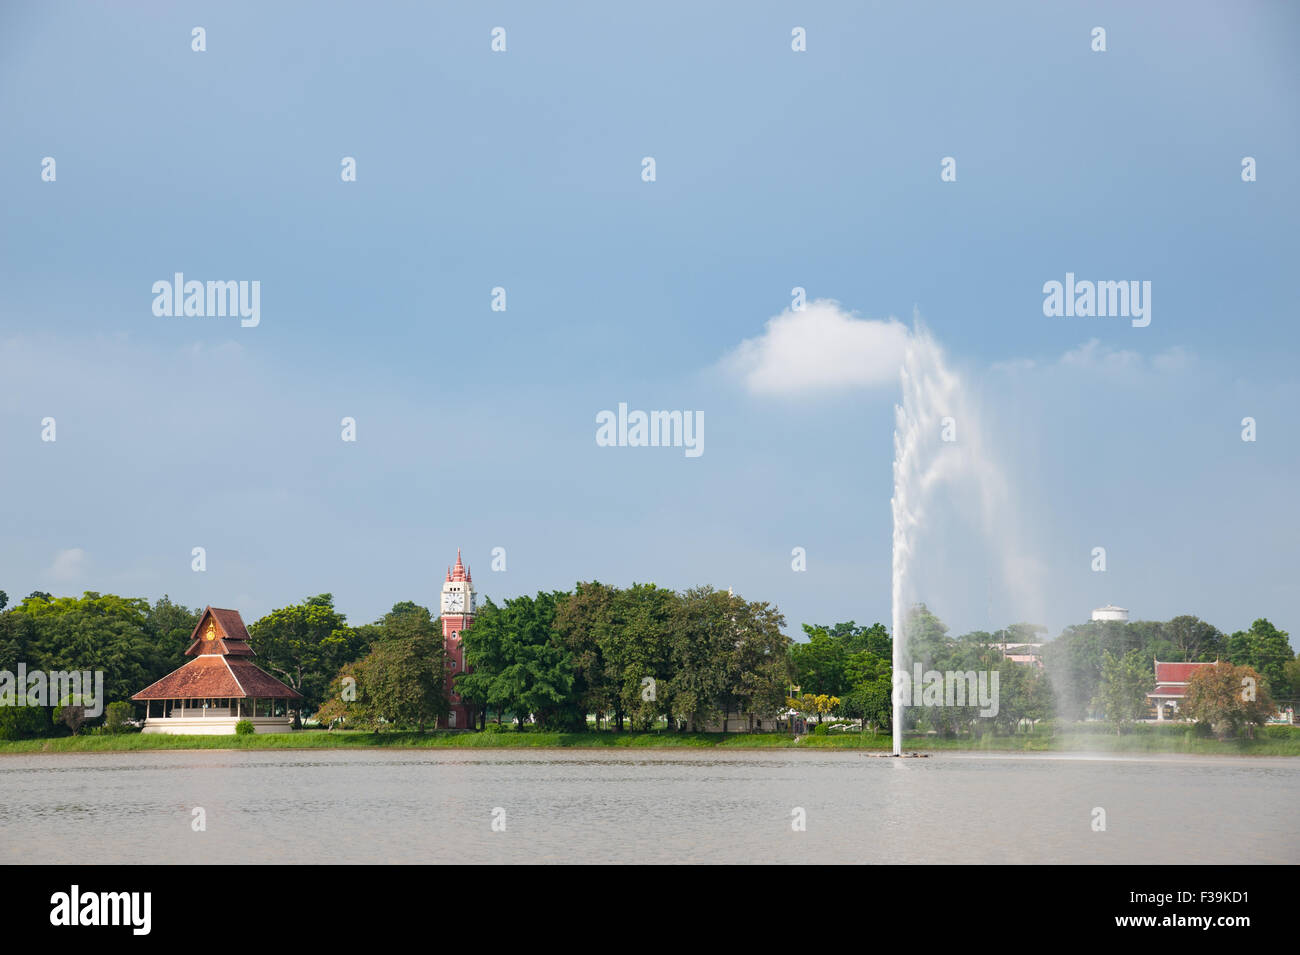 Tempelbauten entlang des Sees am Wat Yansangwararam (Wat Yan) in der Nähe von Pattaya in Thailand. Stockfoto